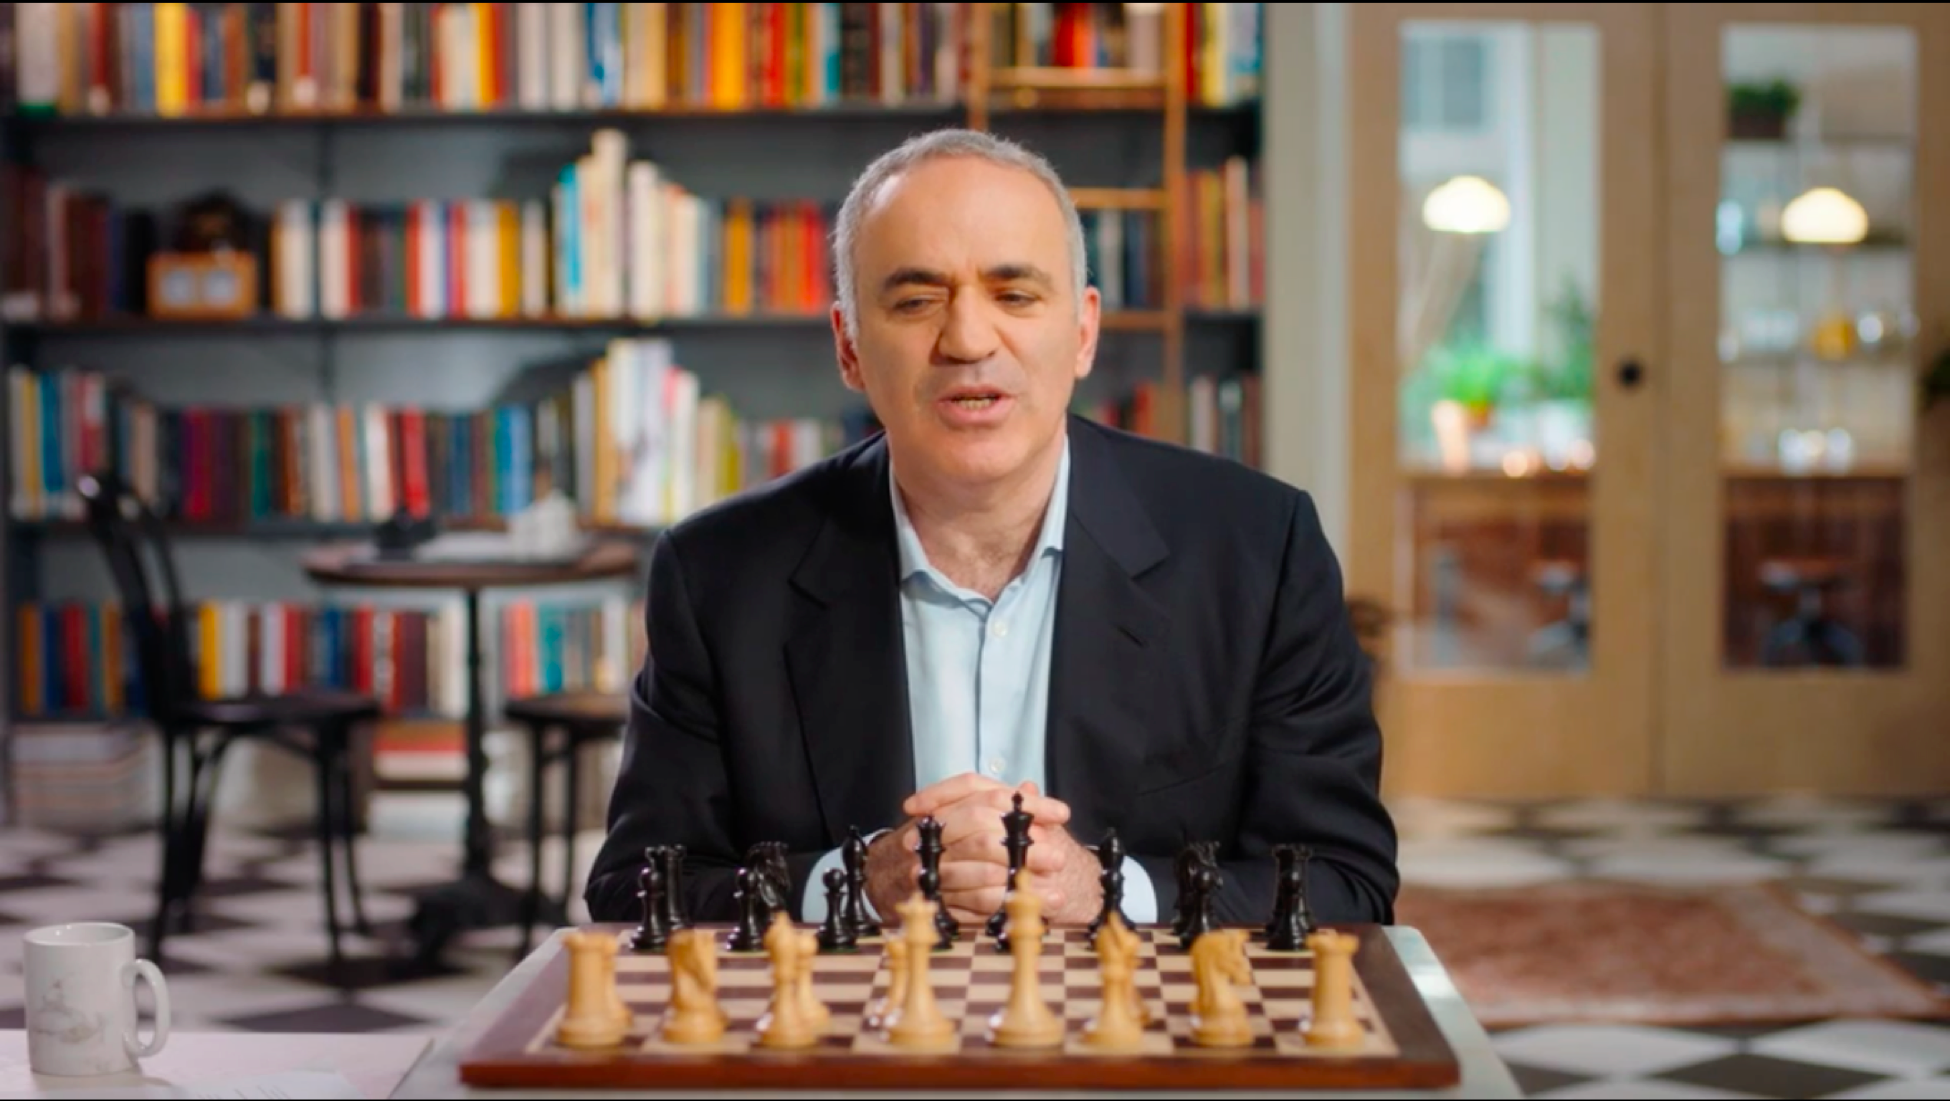 g kasparov chess